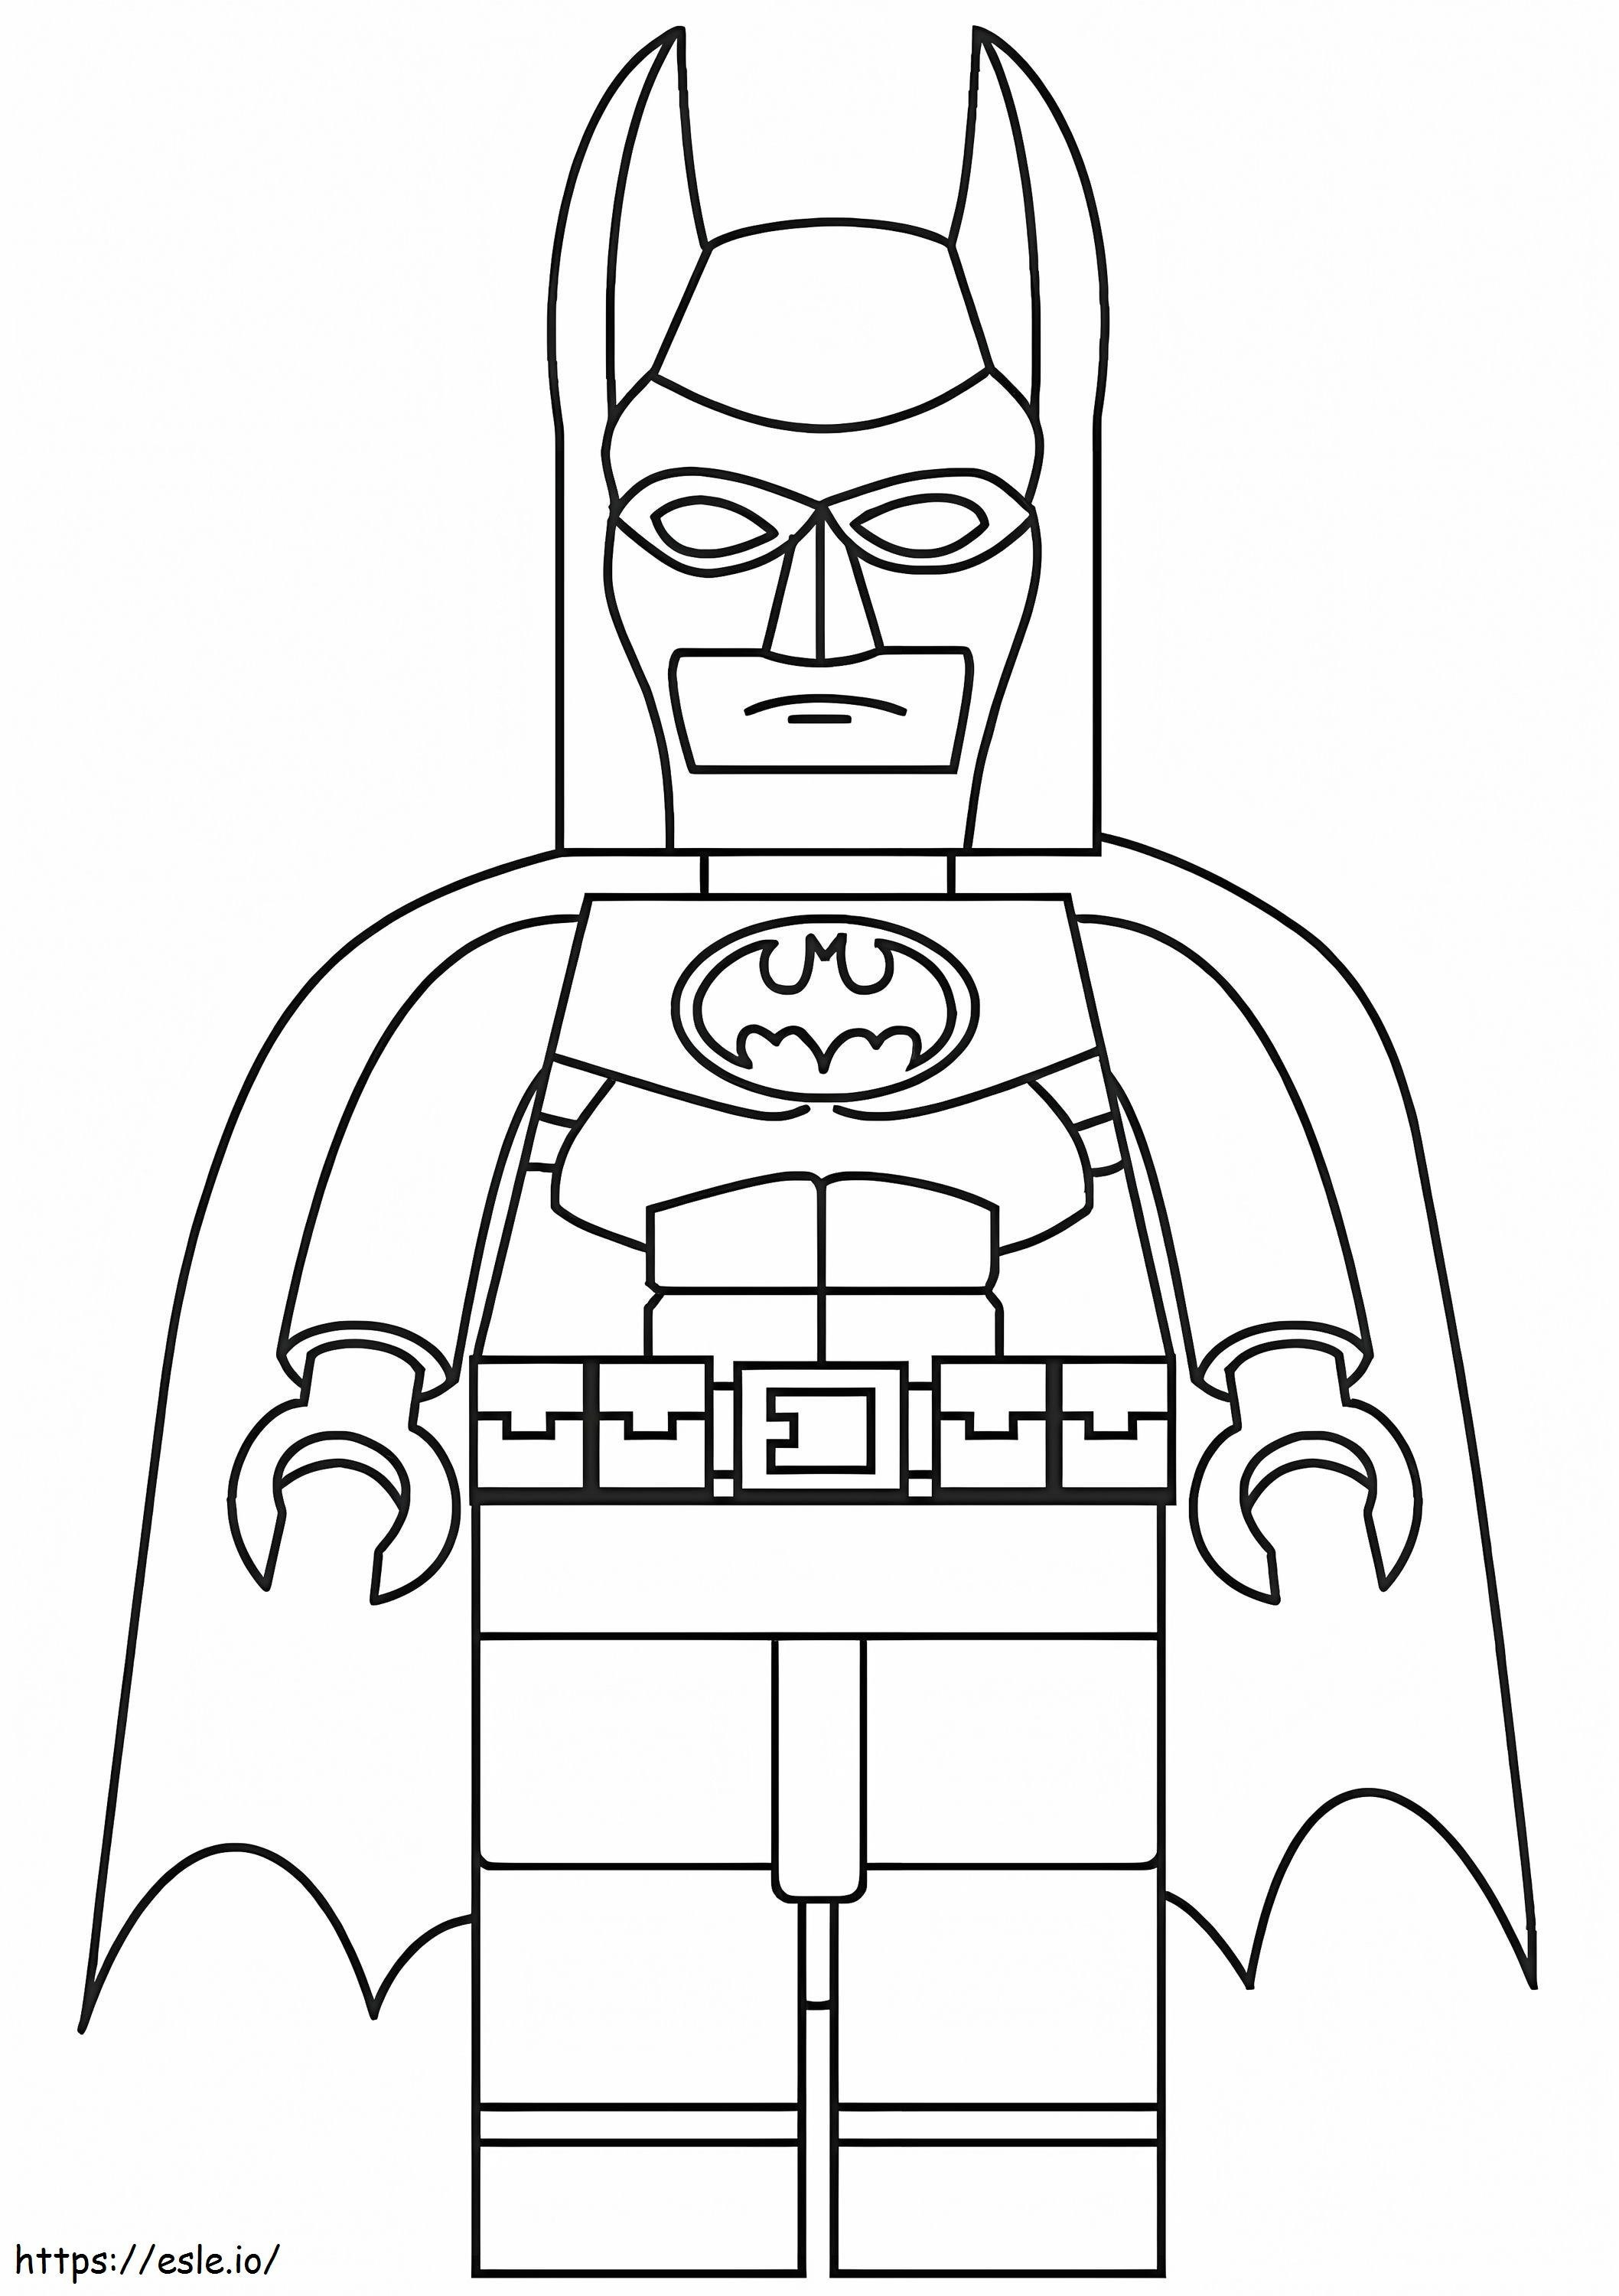 Lego Batman 3 ausmalbilder